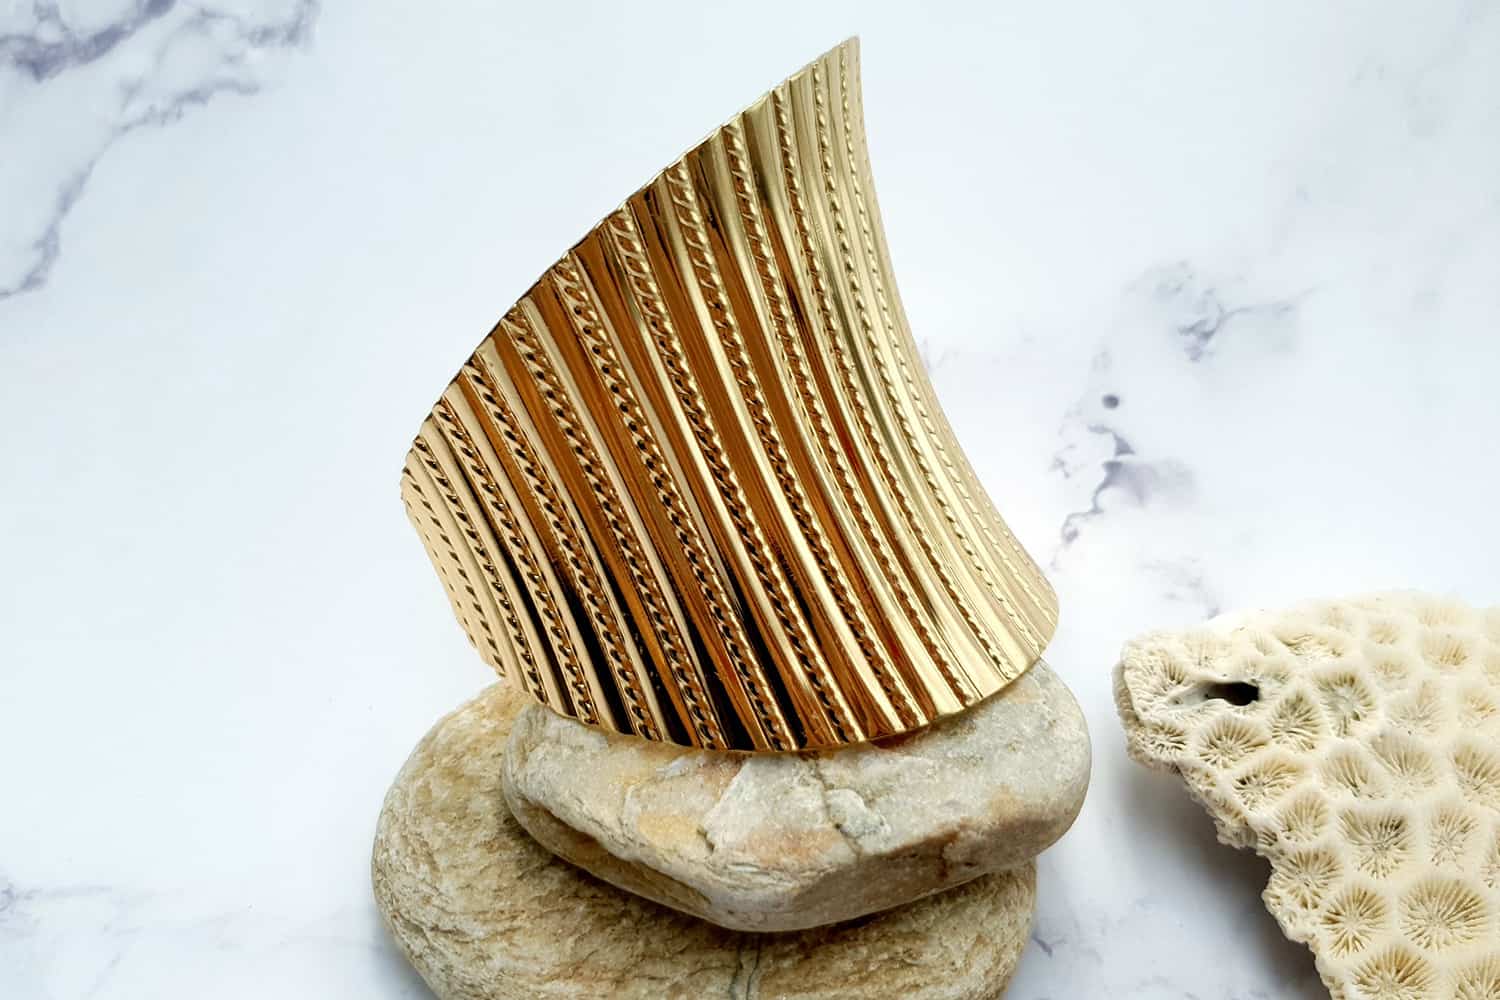 Bracelet metal base stripes pattern, golden color (23400)